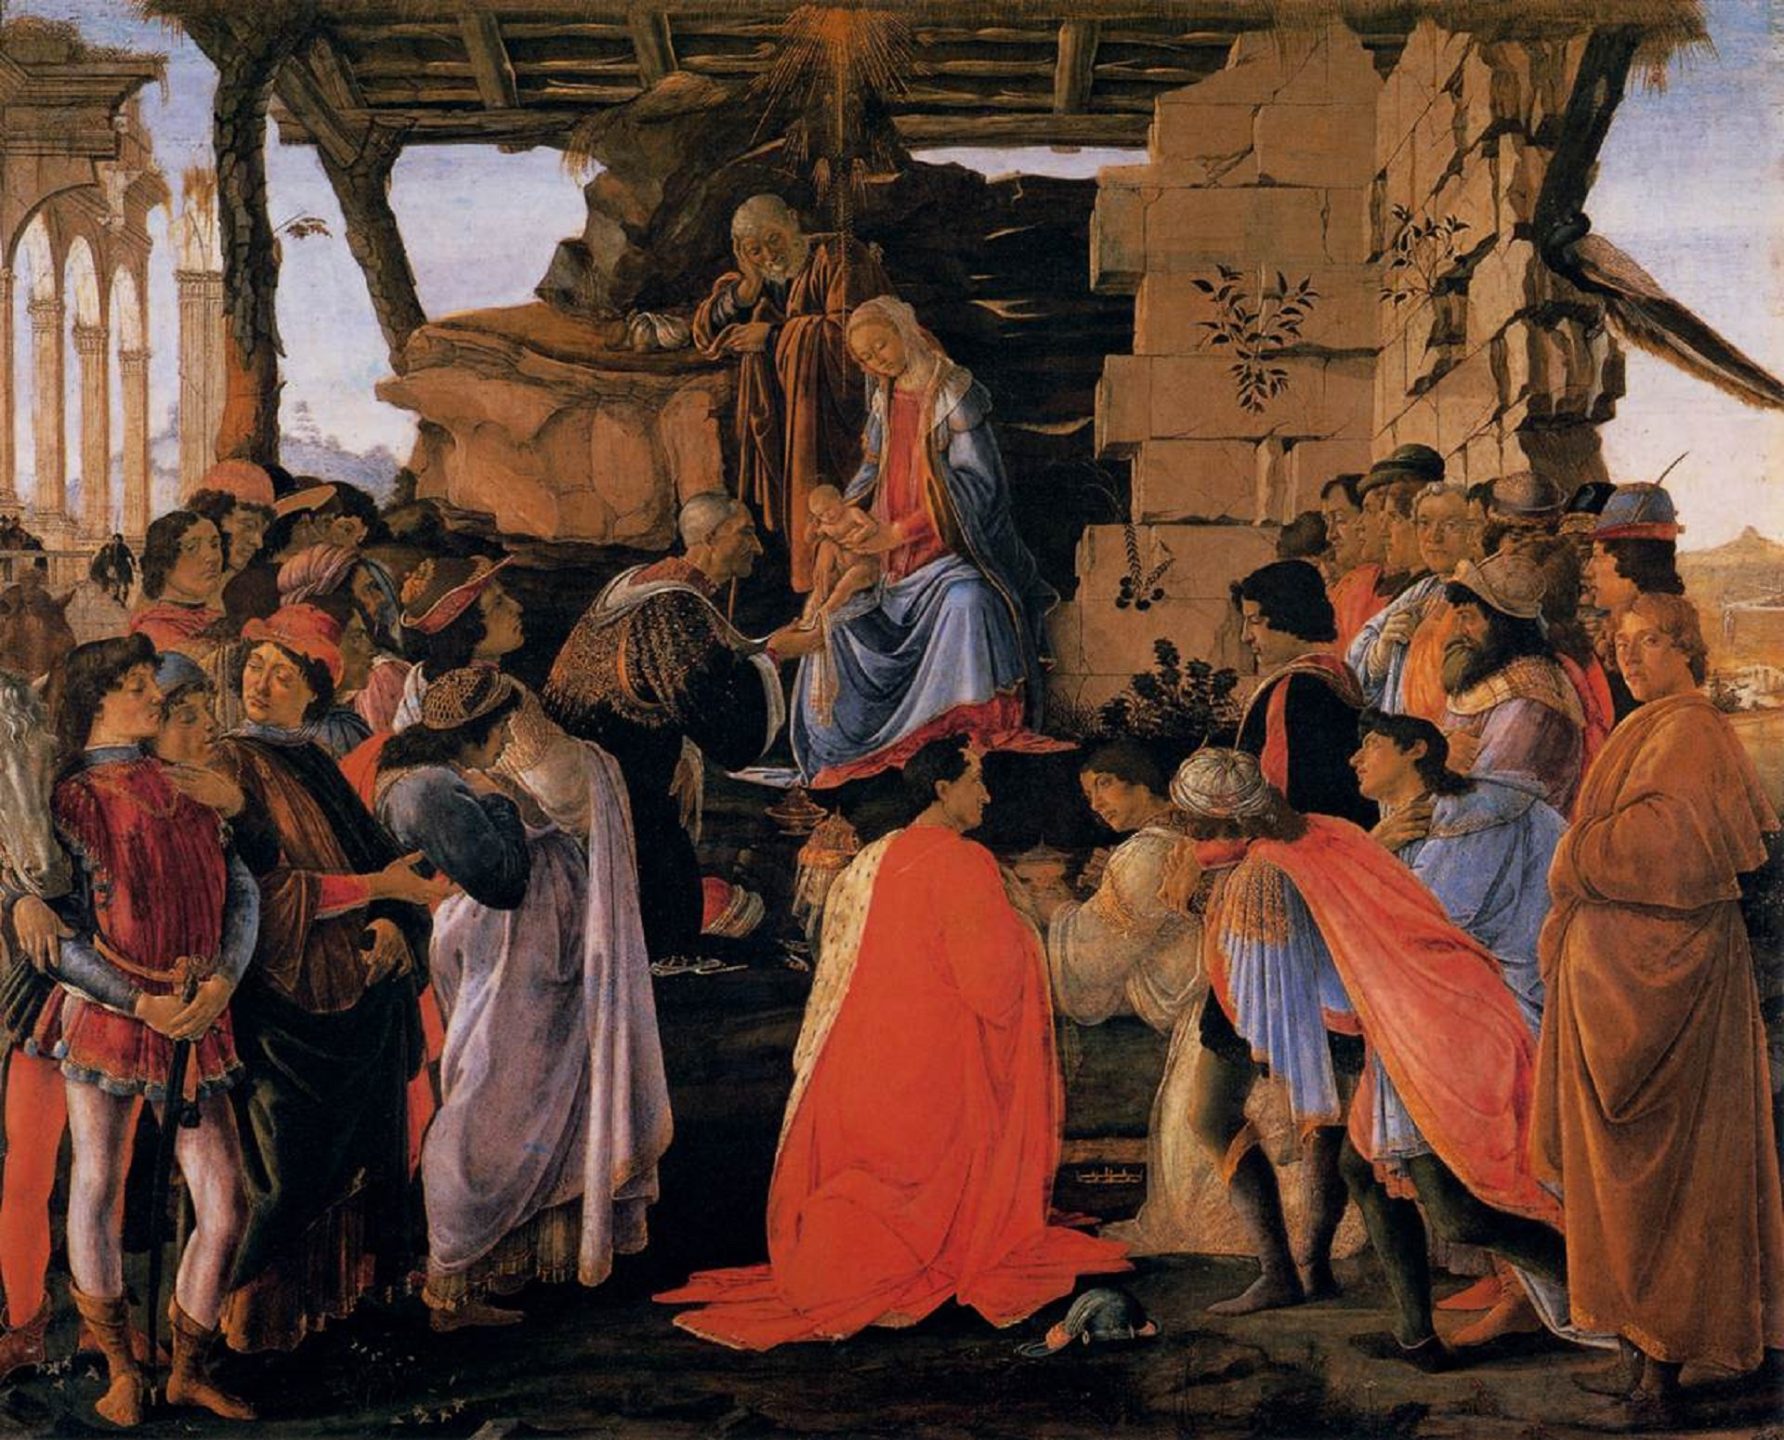 L’adoration  des mages venus de l’Orient lointain. Sandro Botticelli, vers 1475 | Wikimedia.